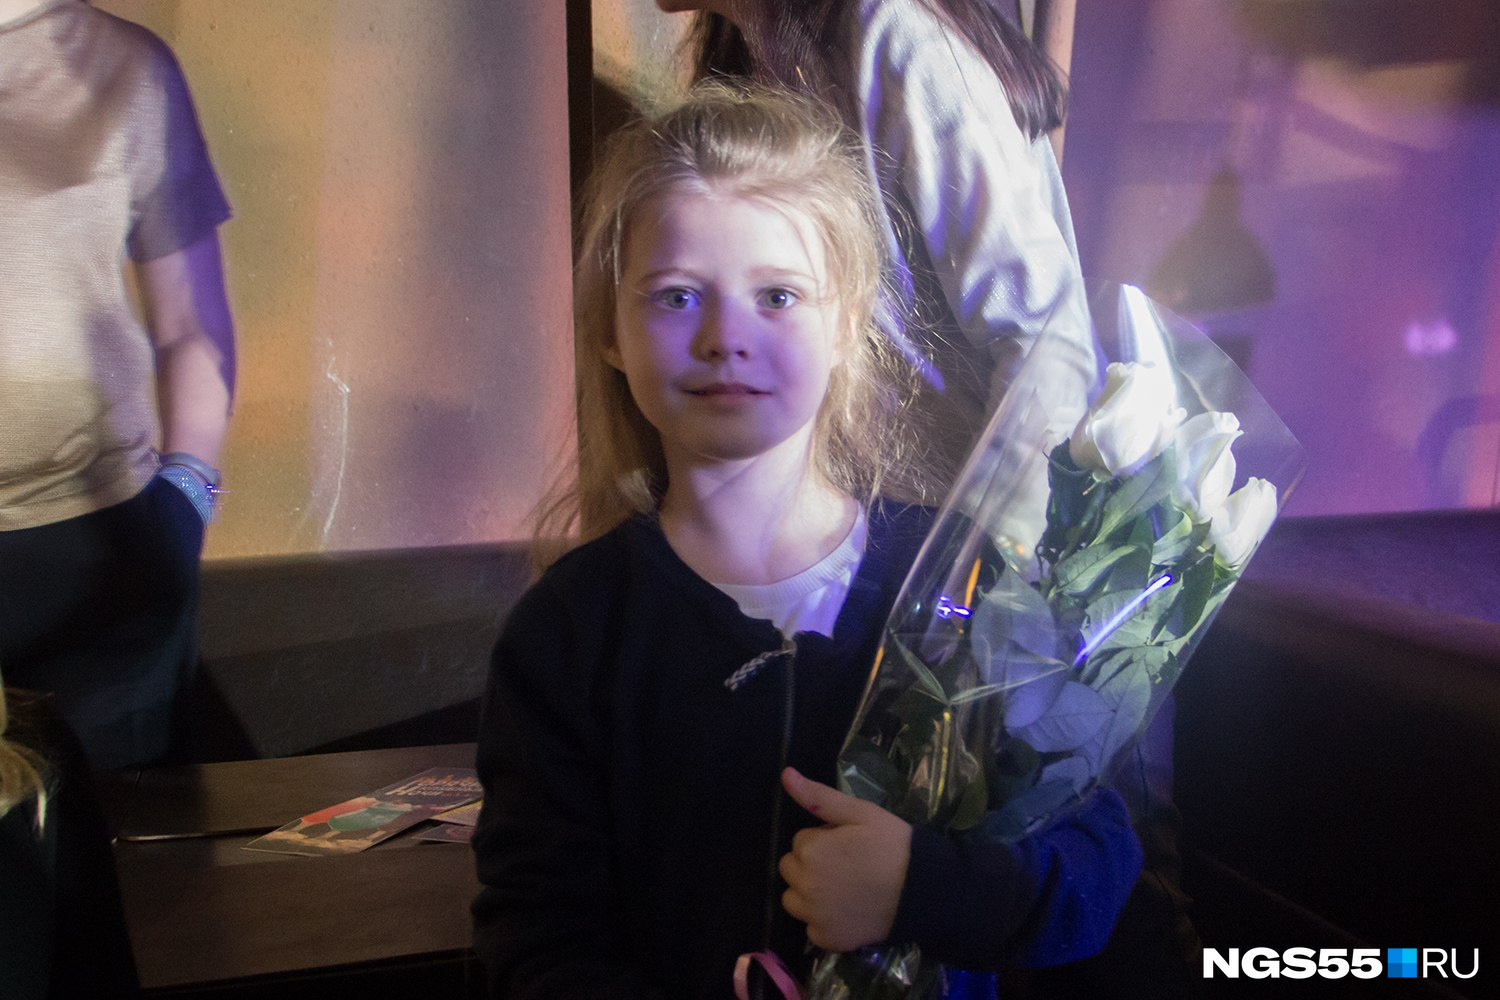 Маленькая Лиза — дочка одного из хоккеистов «Авангарда», принесла на концерт букет белых роз для Лены